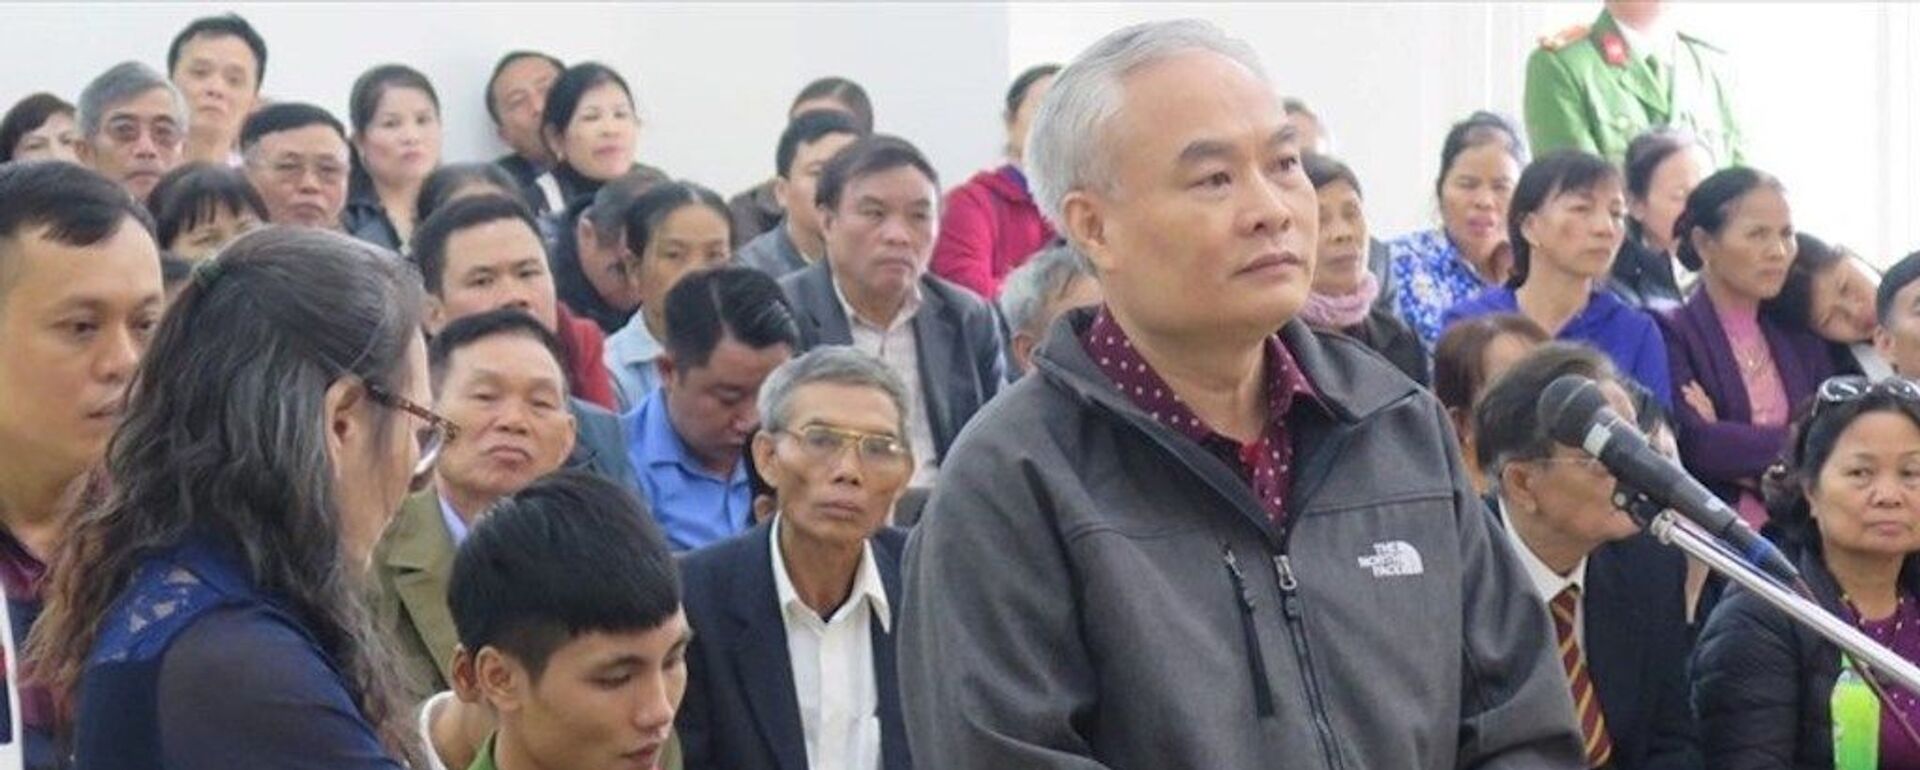 Ông Trần Đức Trung (áo khoác đen, đứng) tại phiên tòa sơ thẩm - Sputnik Việt Nam, 1920, 23.11.2019